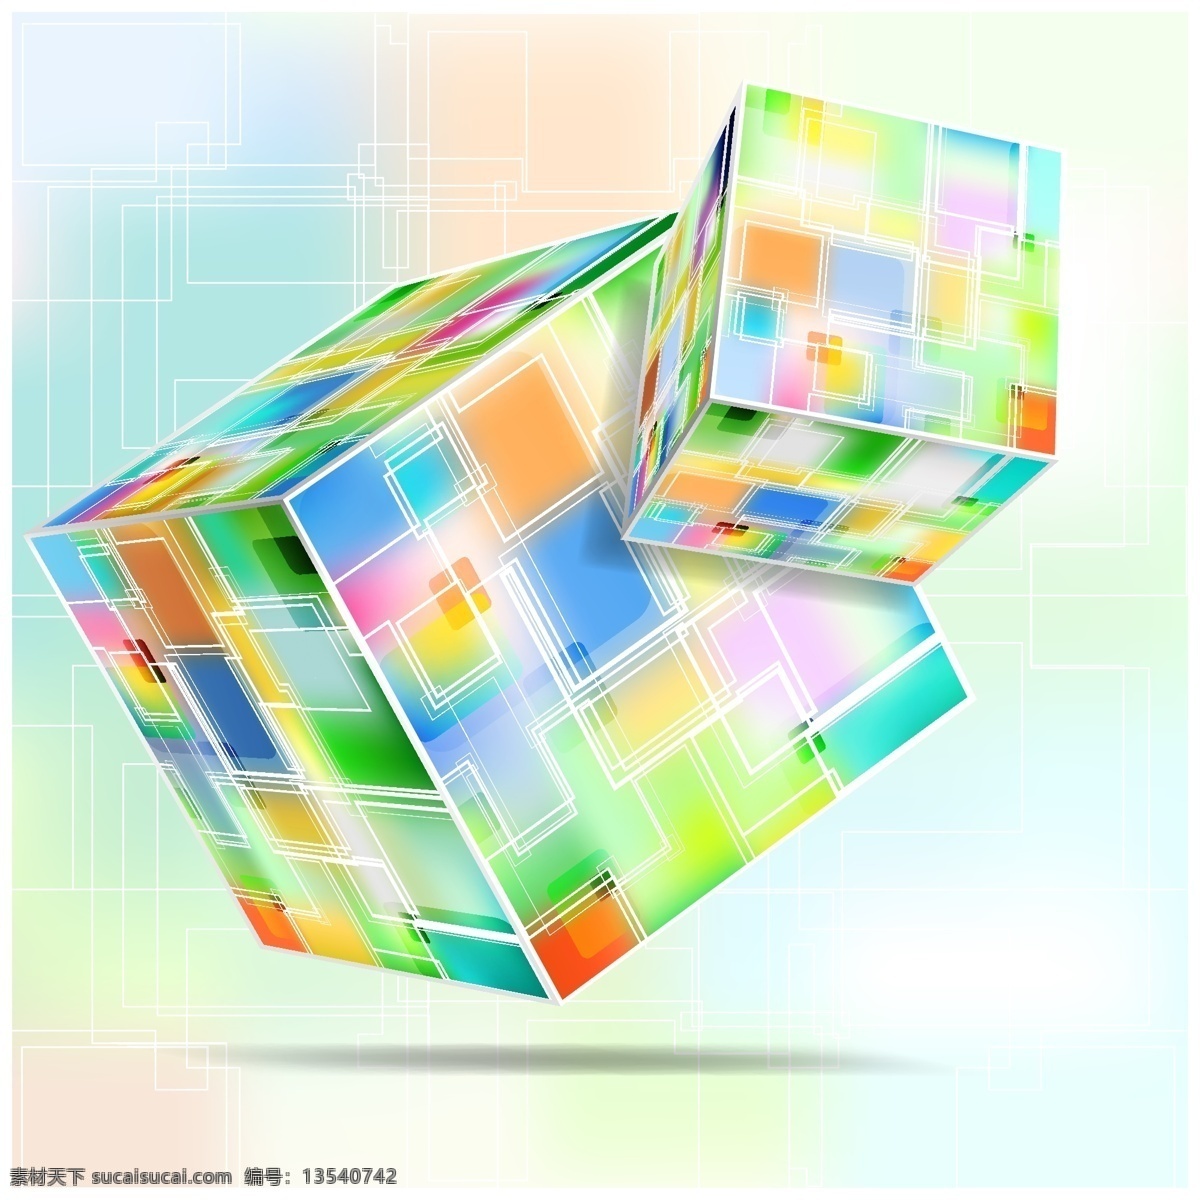 炫彩 立方体 背景 矢量图 背景设计 彩色方块 光圈 魔方 气泡 炫彩立方体 三维 其他矢量图